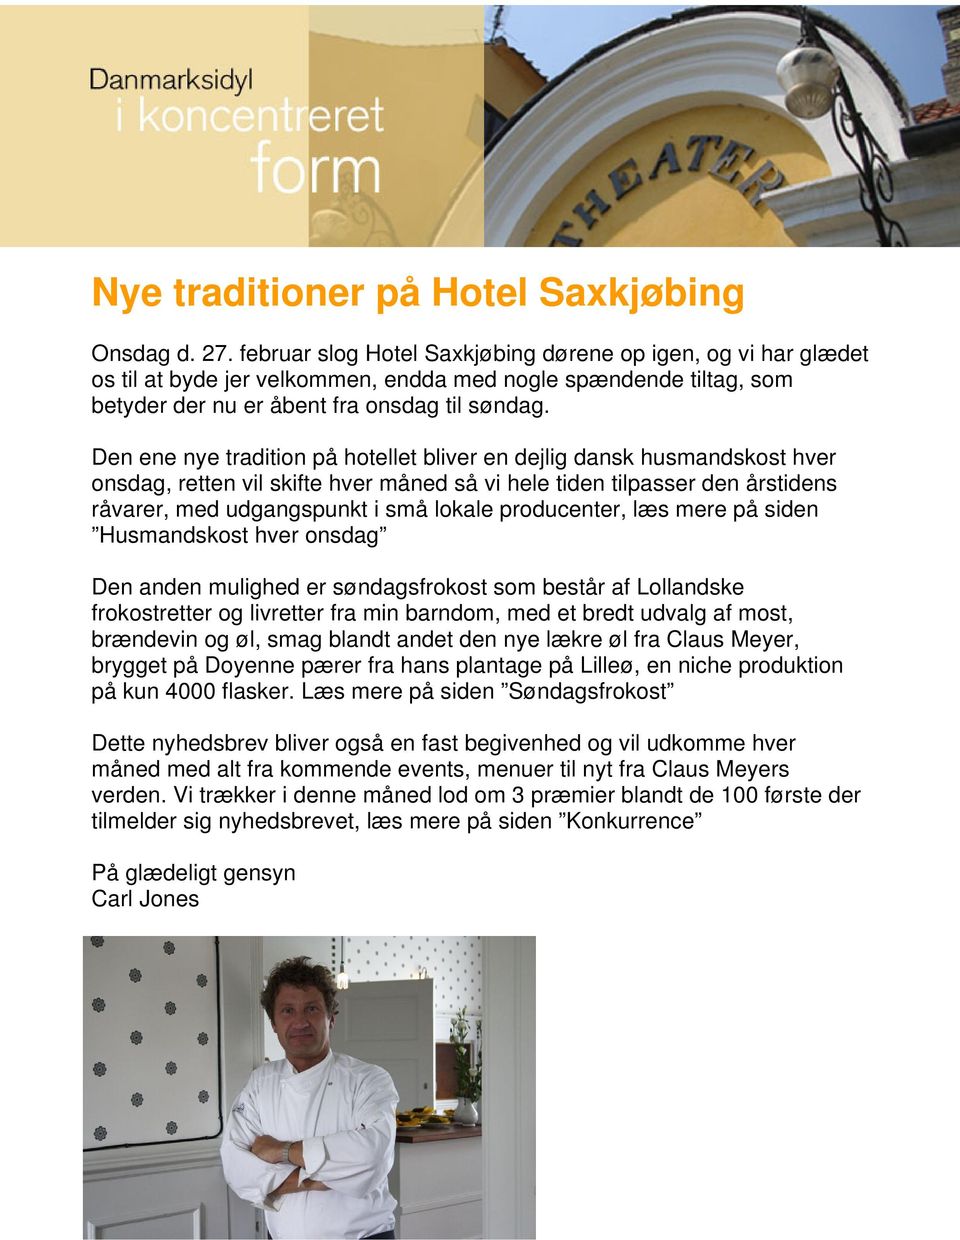 Den ene nye tradition på hotellet bliver en dejlig dansk husmandskost hver onsdag, retten vil skifte hver måned så vi hele tiden tilpasser den årstidens råvarer, med udgangspunkt i små lokale